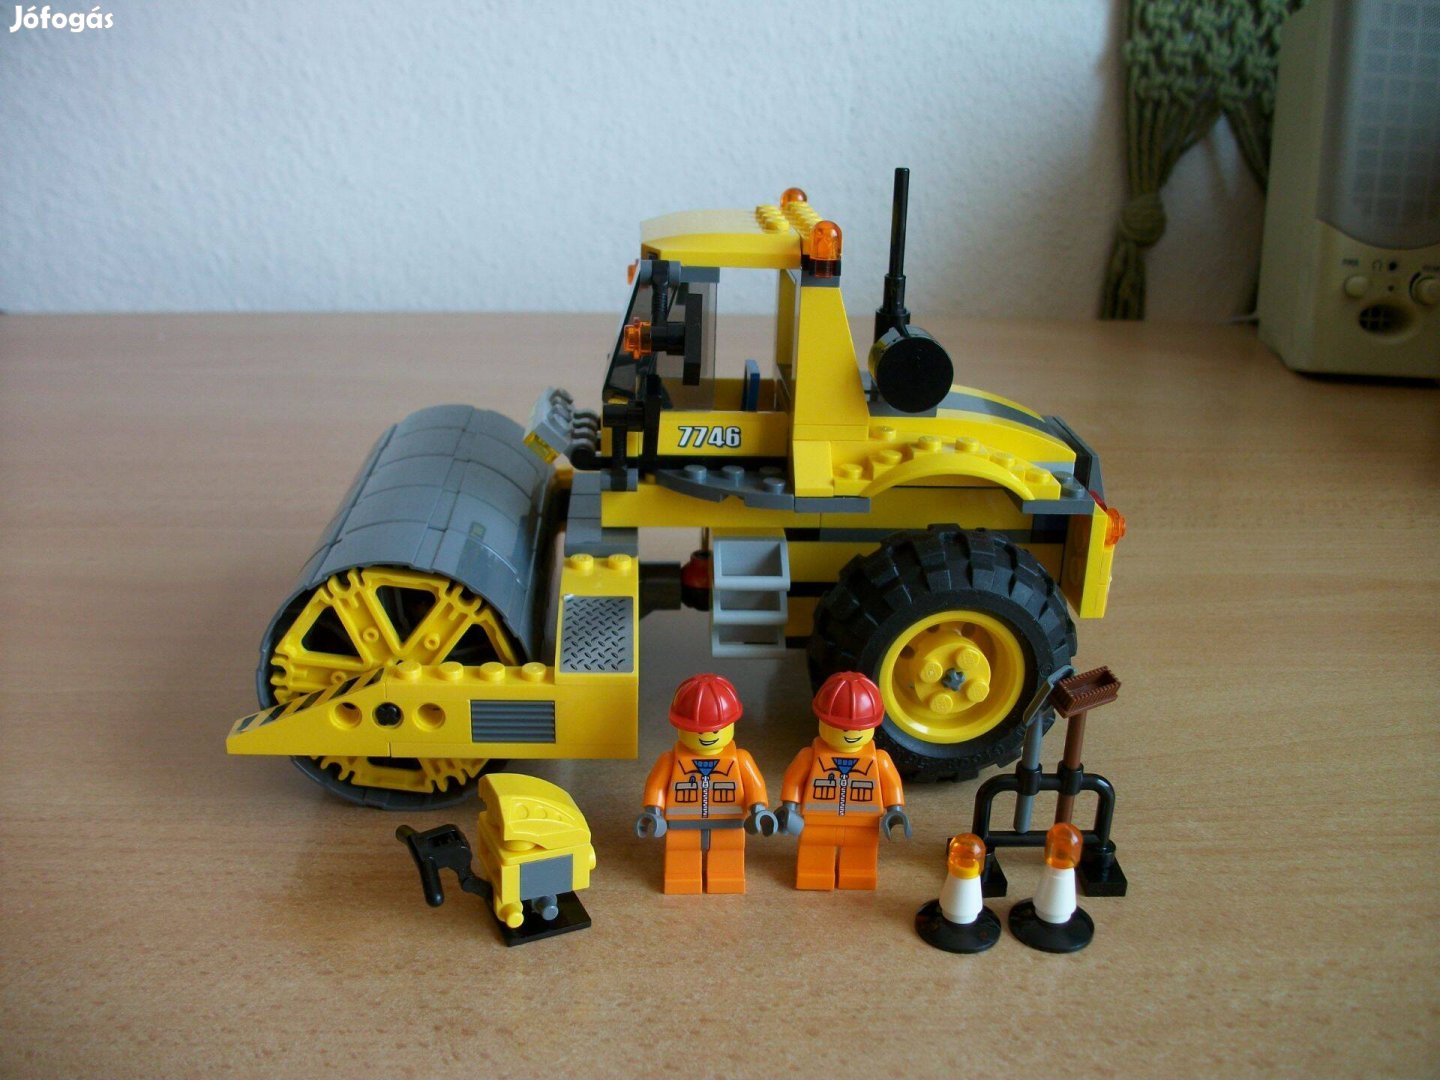 LEGO 7746 készlet